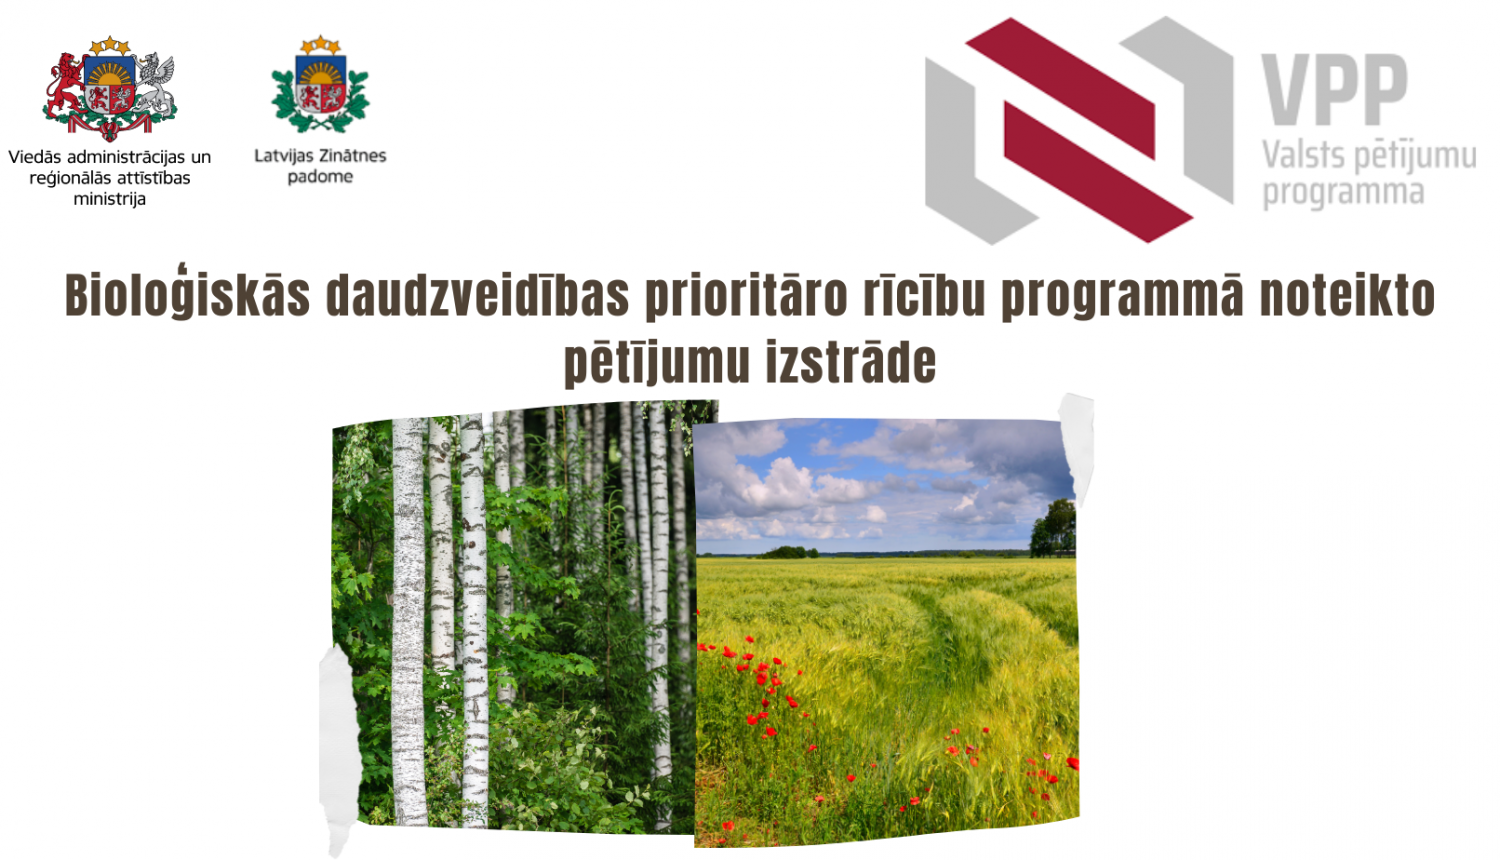 Valsts pētījuma programma Bioloģiskās daudzveidības prioritāro rīcību programmā noteikto pētījumu izstrāde